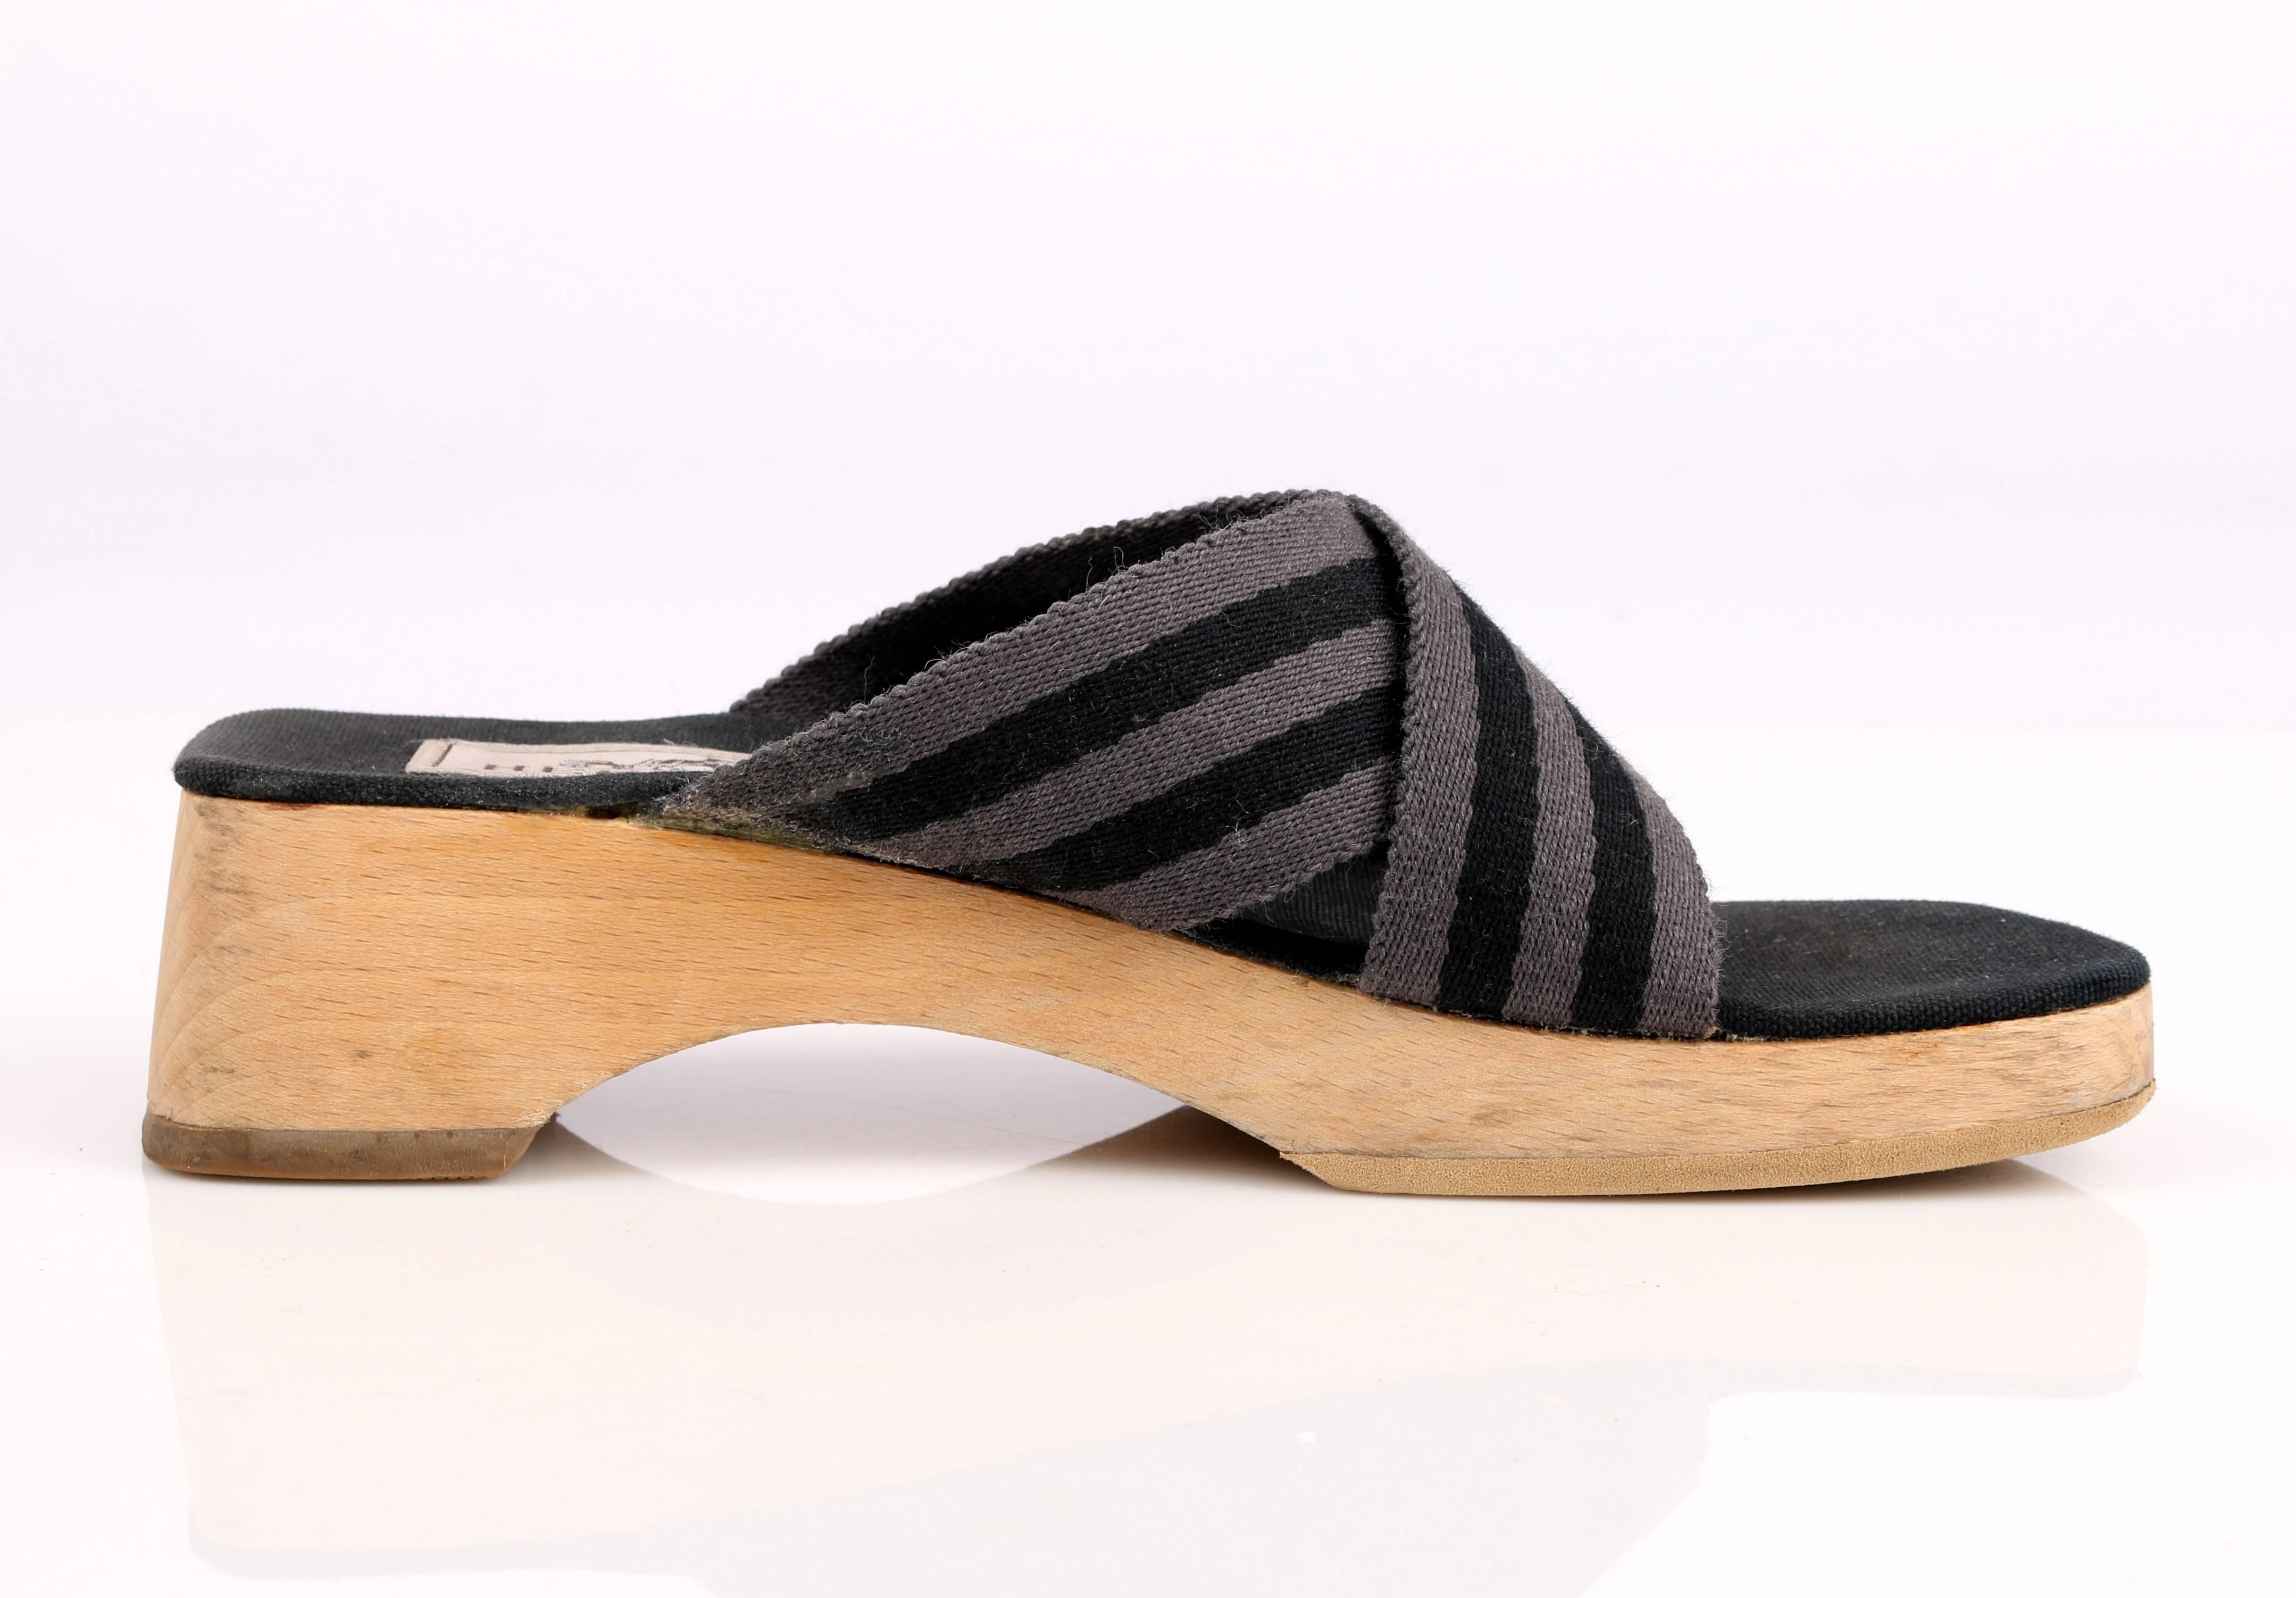 wooden slides shoes